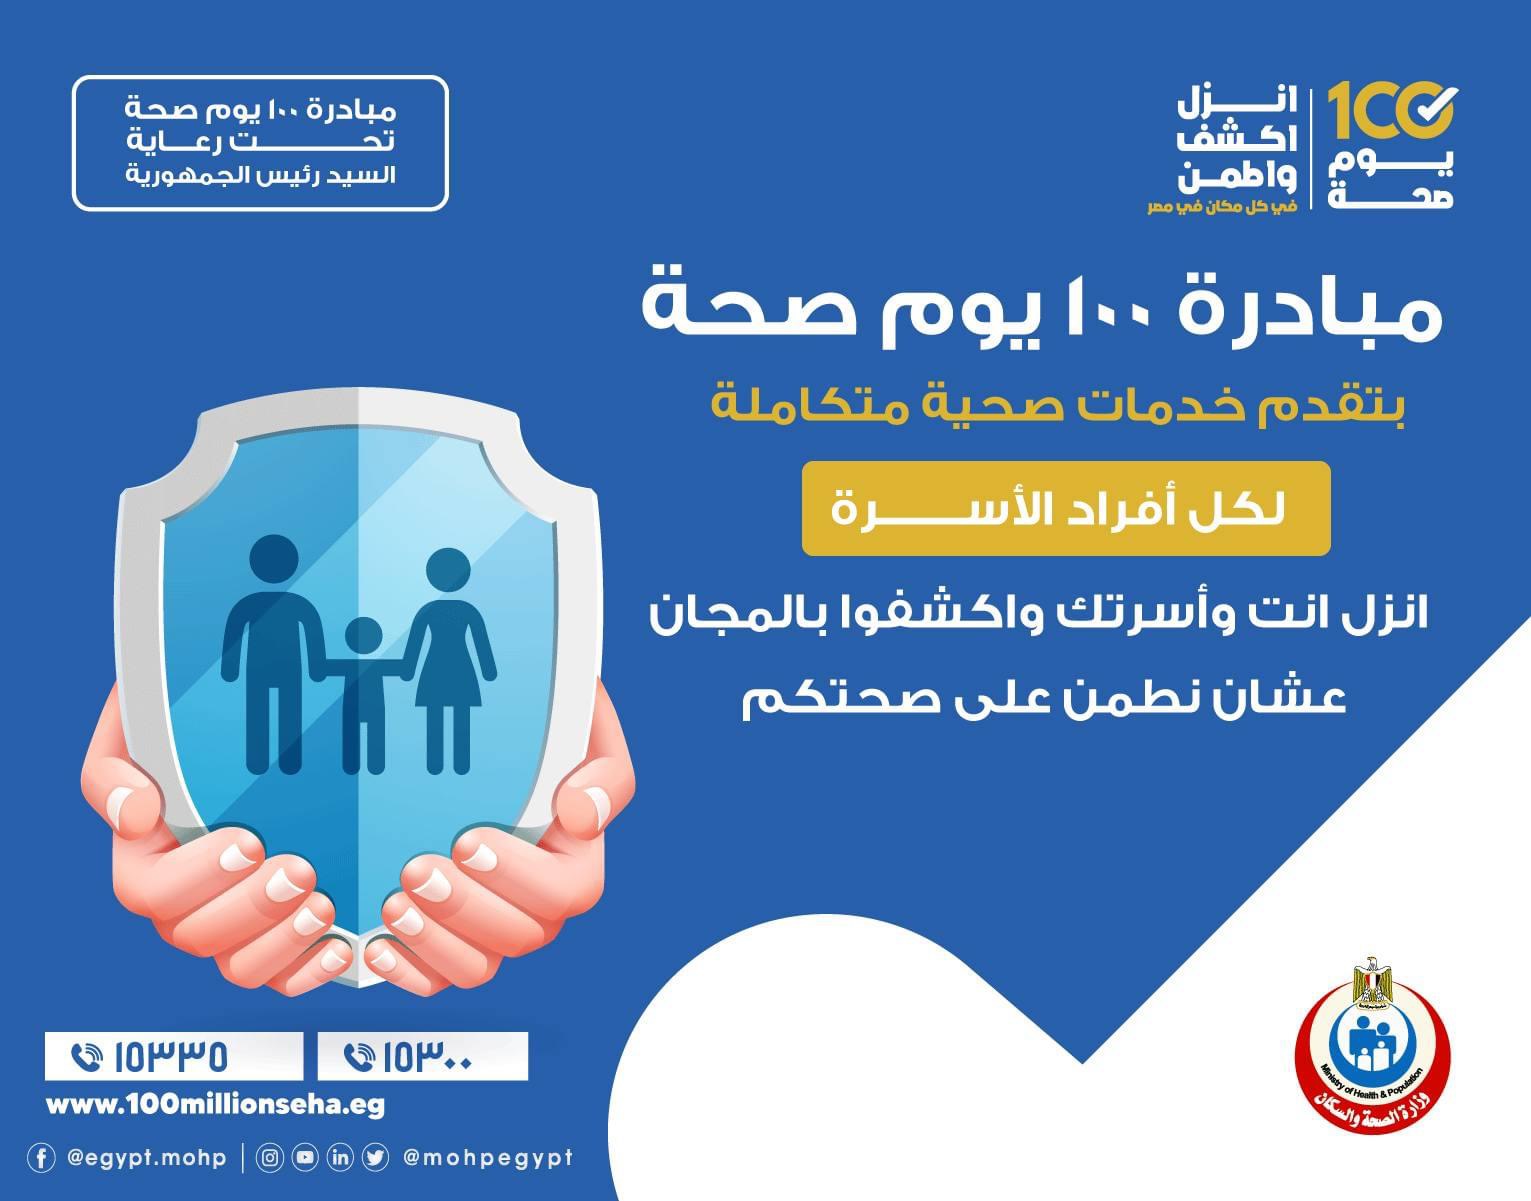 مبادرة 100 يوم صحة لكل افراد الأسرة المصرية